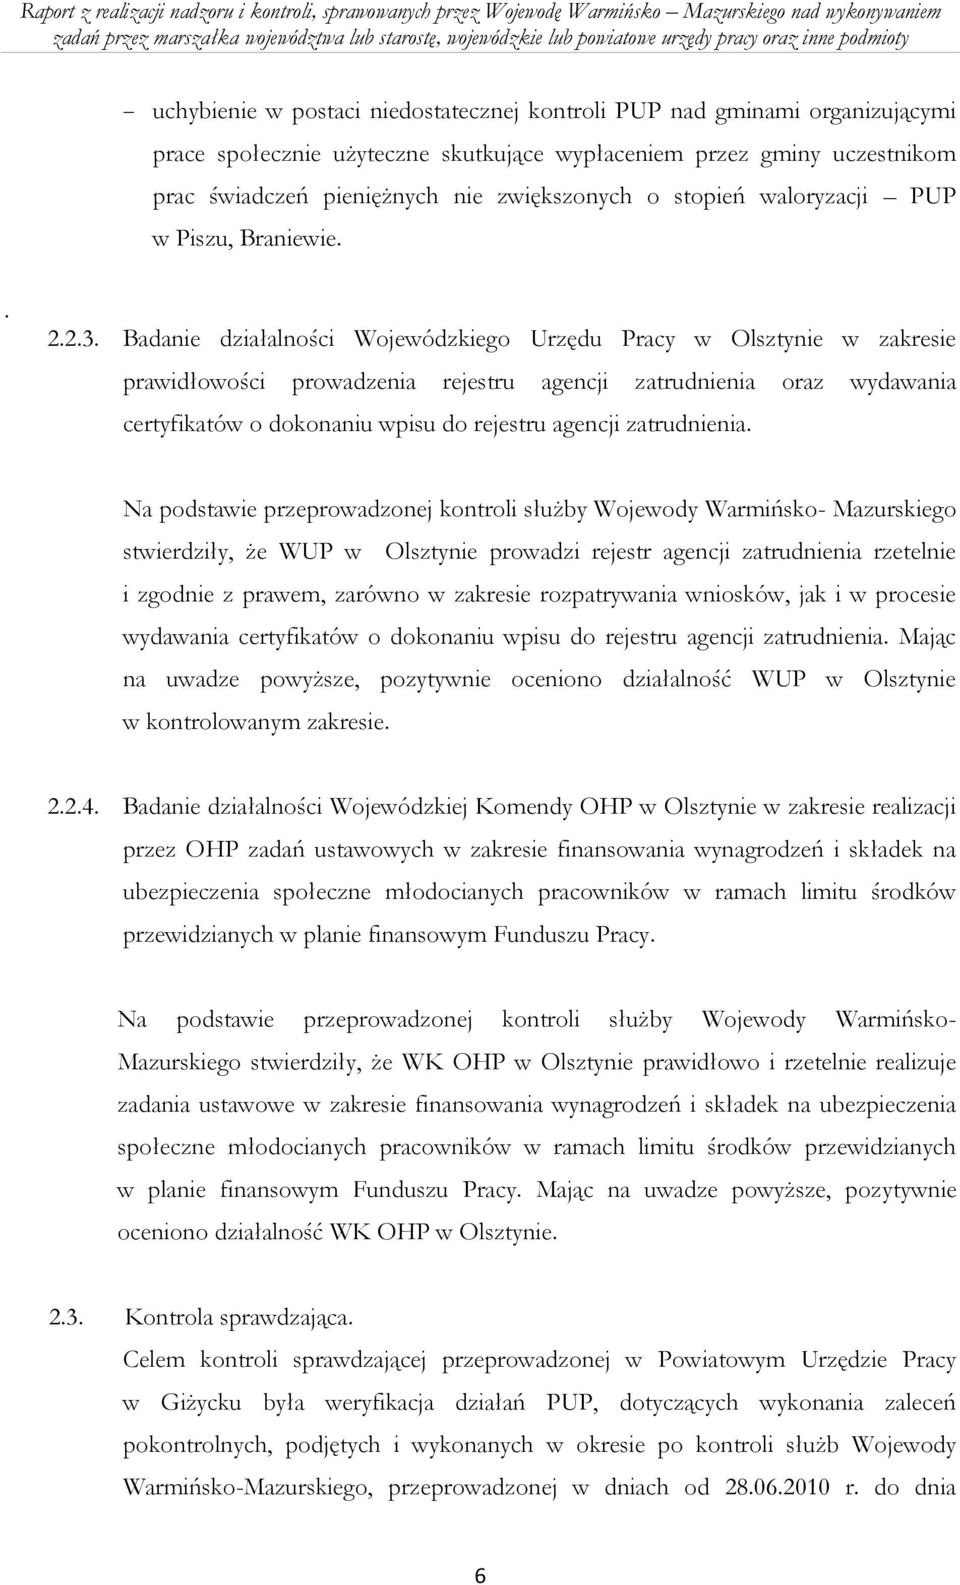 Badanie działalności Wojewódzkiego Urzędu Pracy w Olsztynie w zakresie prawidłowości prowadzenia rejestru agencji zatrudnienia oraz wydawania certyfikatów o dokonaniu wpisu do rejestru agencji